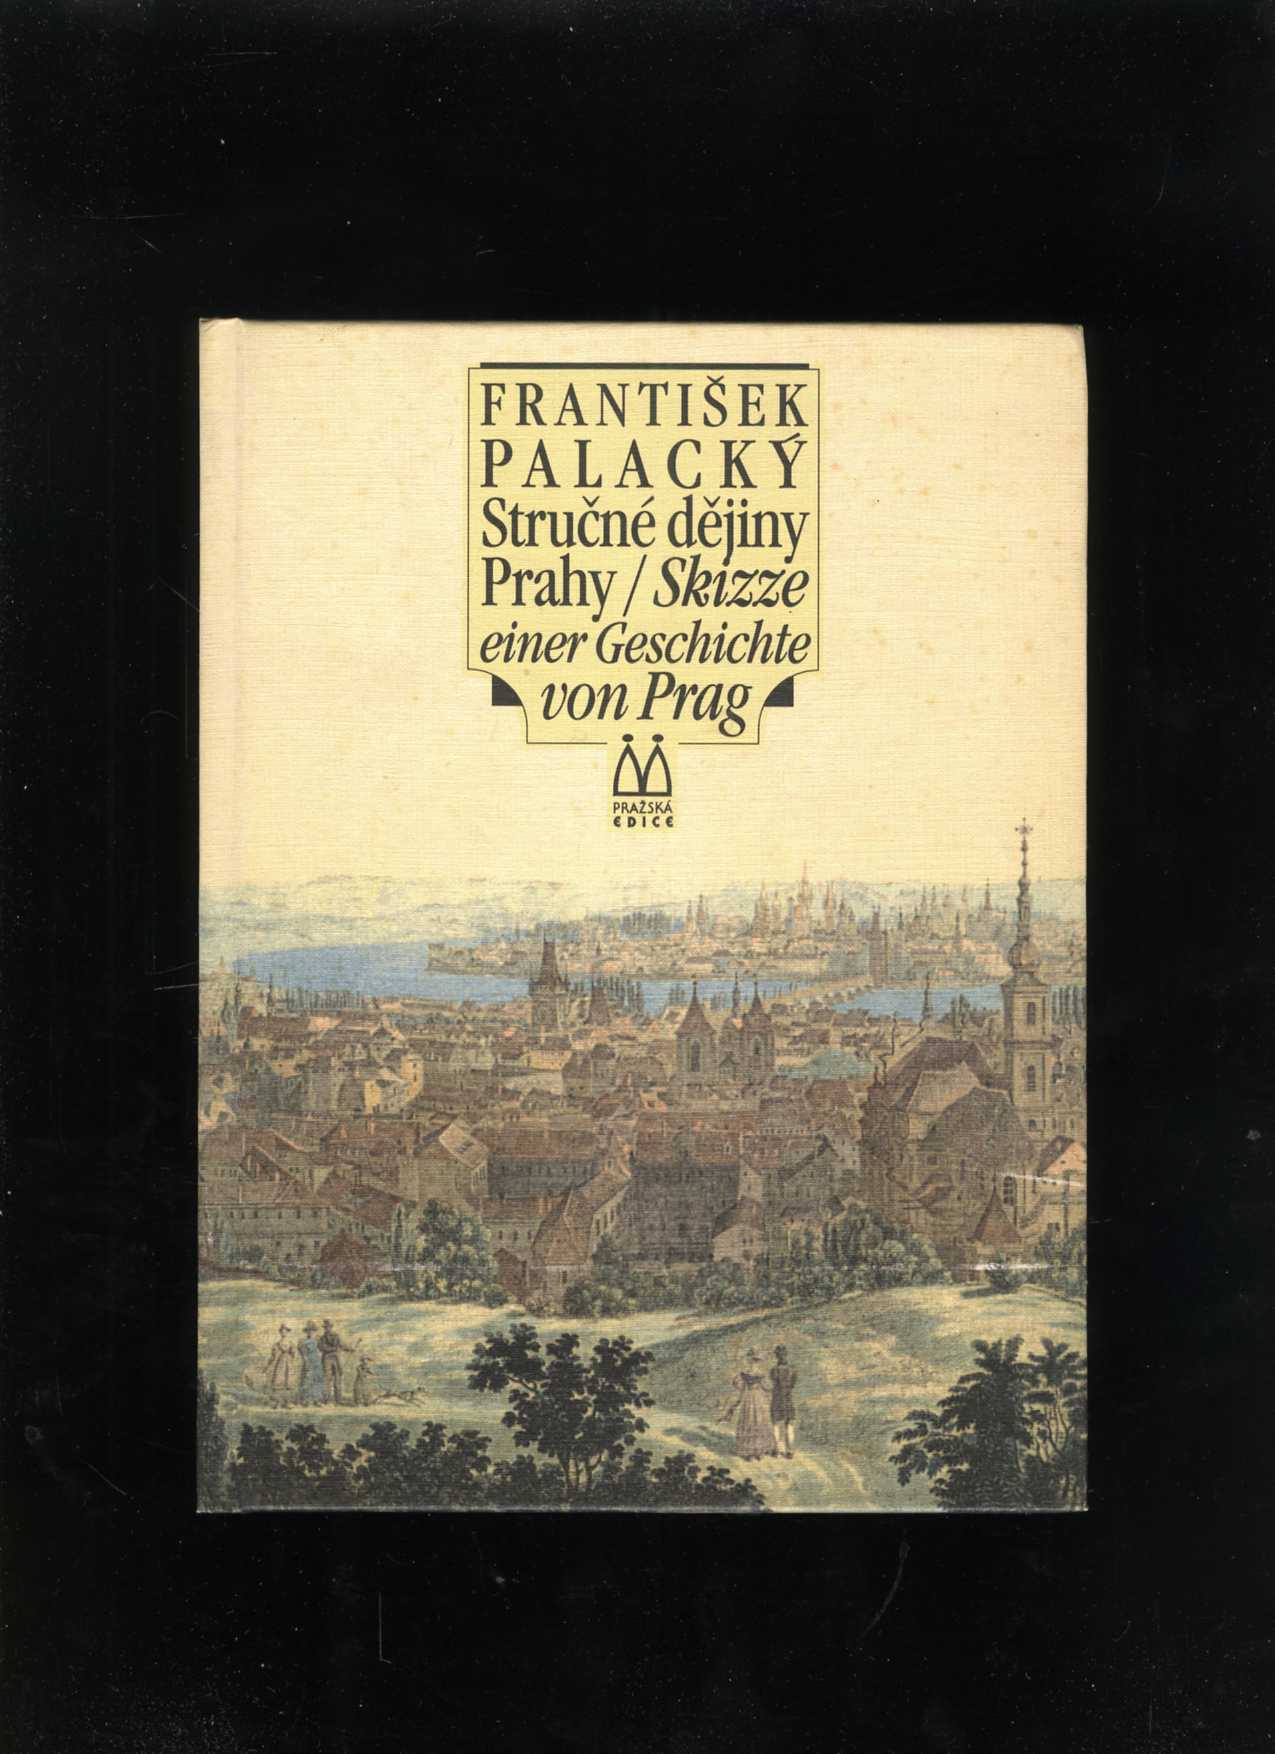 Stručné dějiny Prahy/Skizze einer Geschichte von Prag (František Palacký)